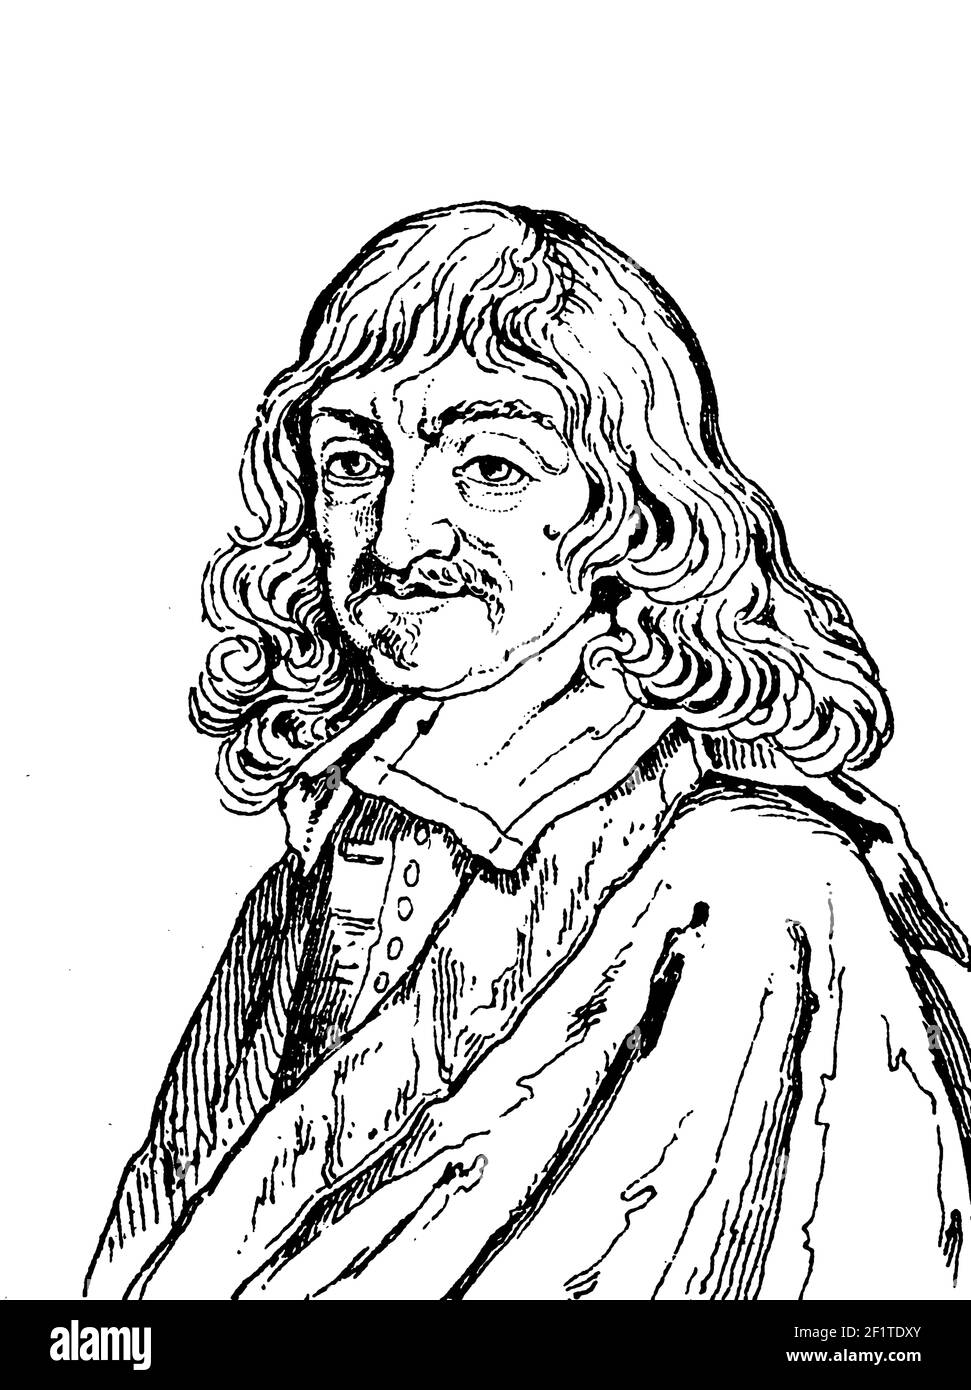 Antike Gravur aus dem 19th. Jahrhundert eines Porträts von Rene Descartes, französischer Philosoph, Mathematiker, Wissenschaftler und Schriftsteller. Ihm wird der "Vater" zugeschrieben Stockfoto